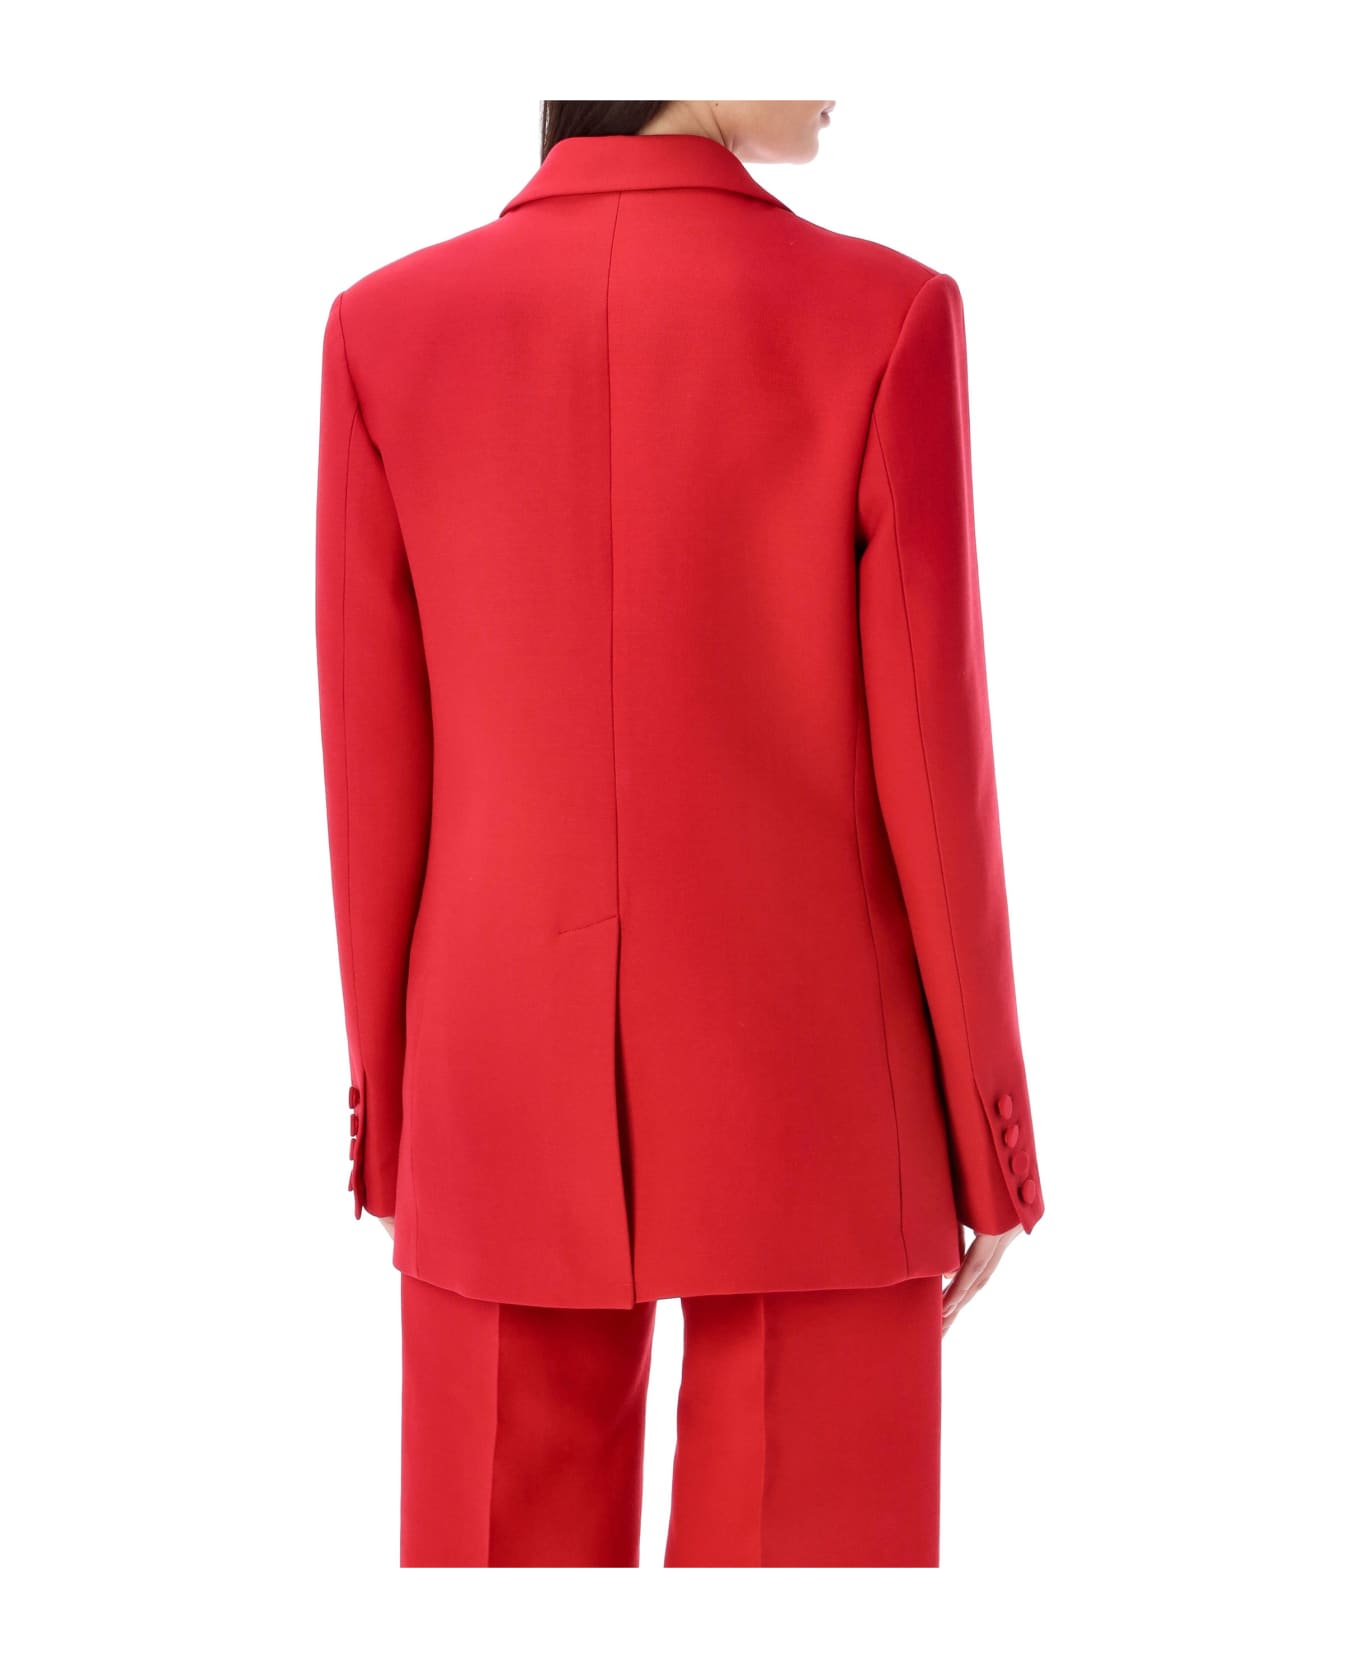 Valentino Garavani Crepe Couture Blazer - RED